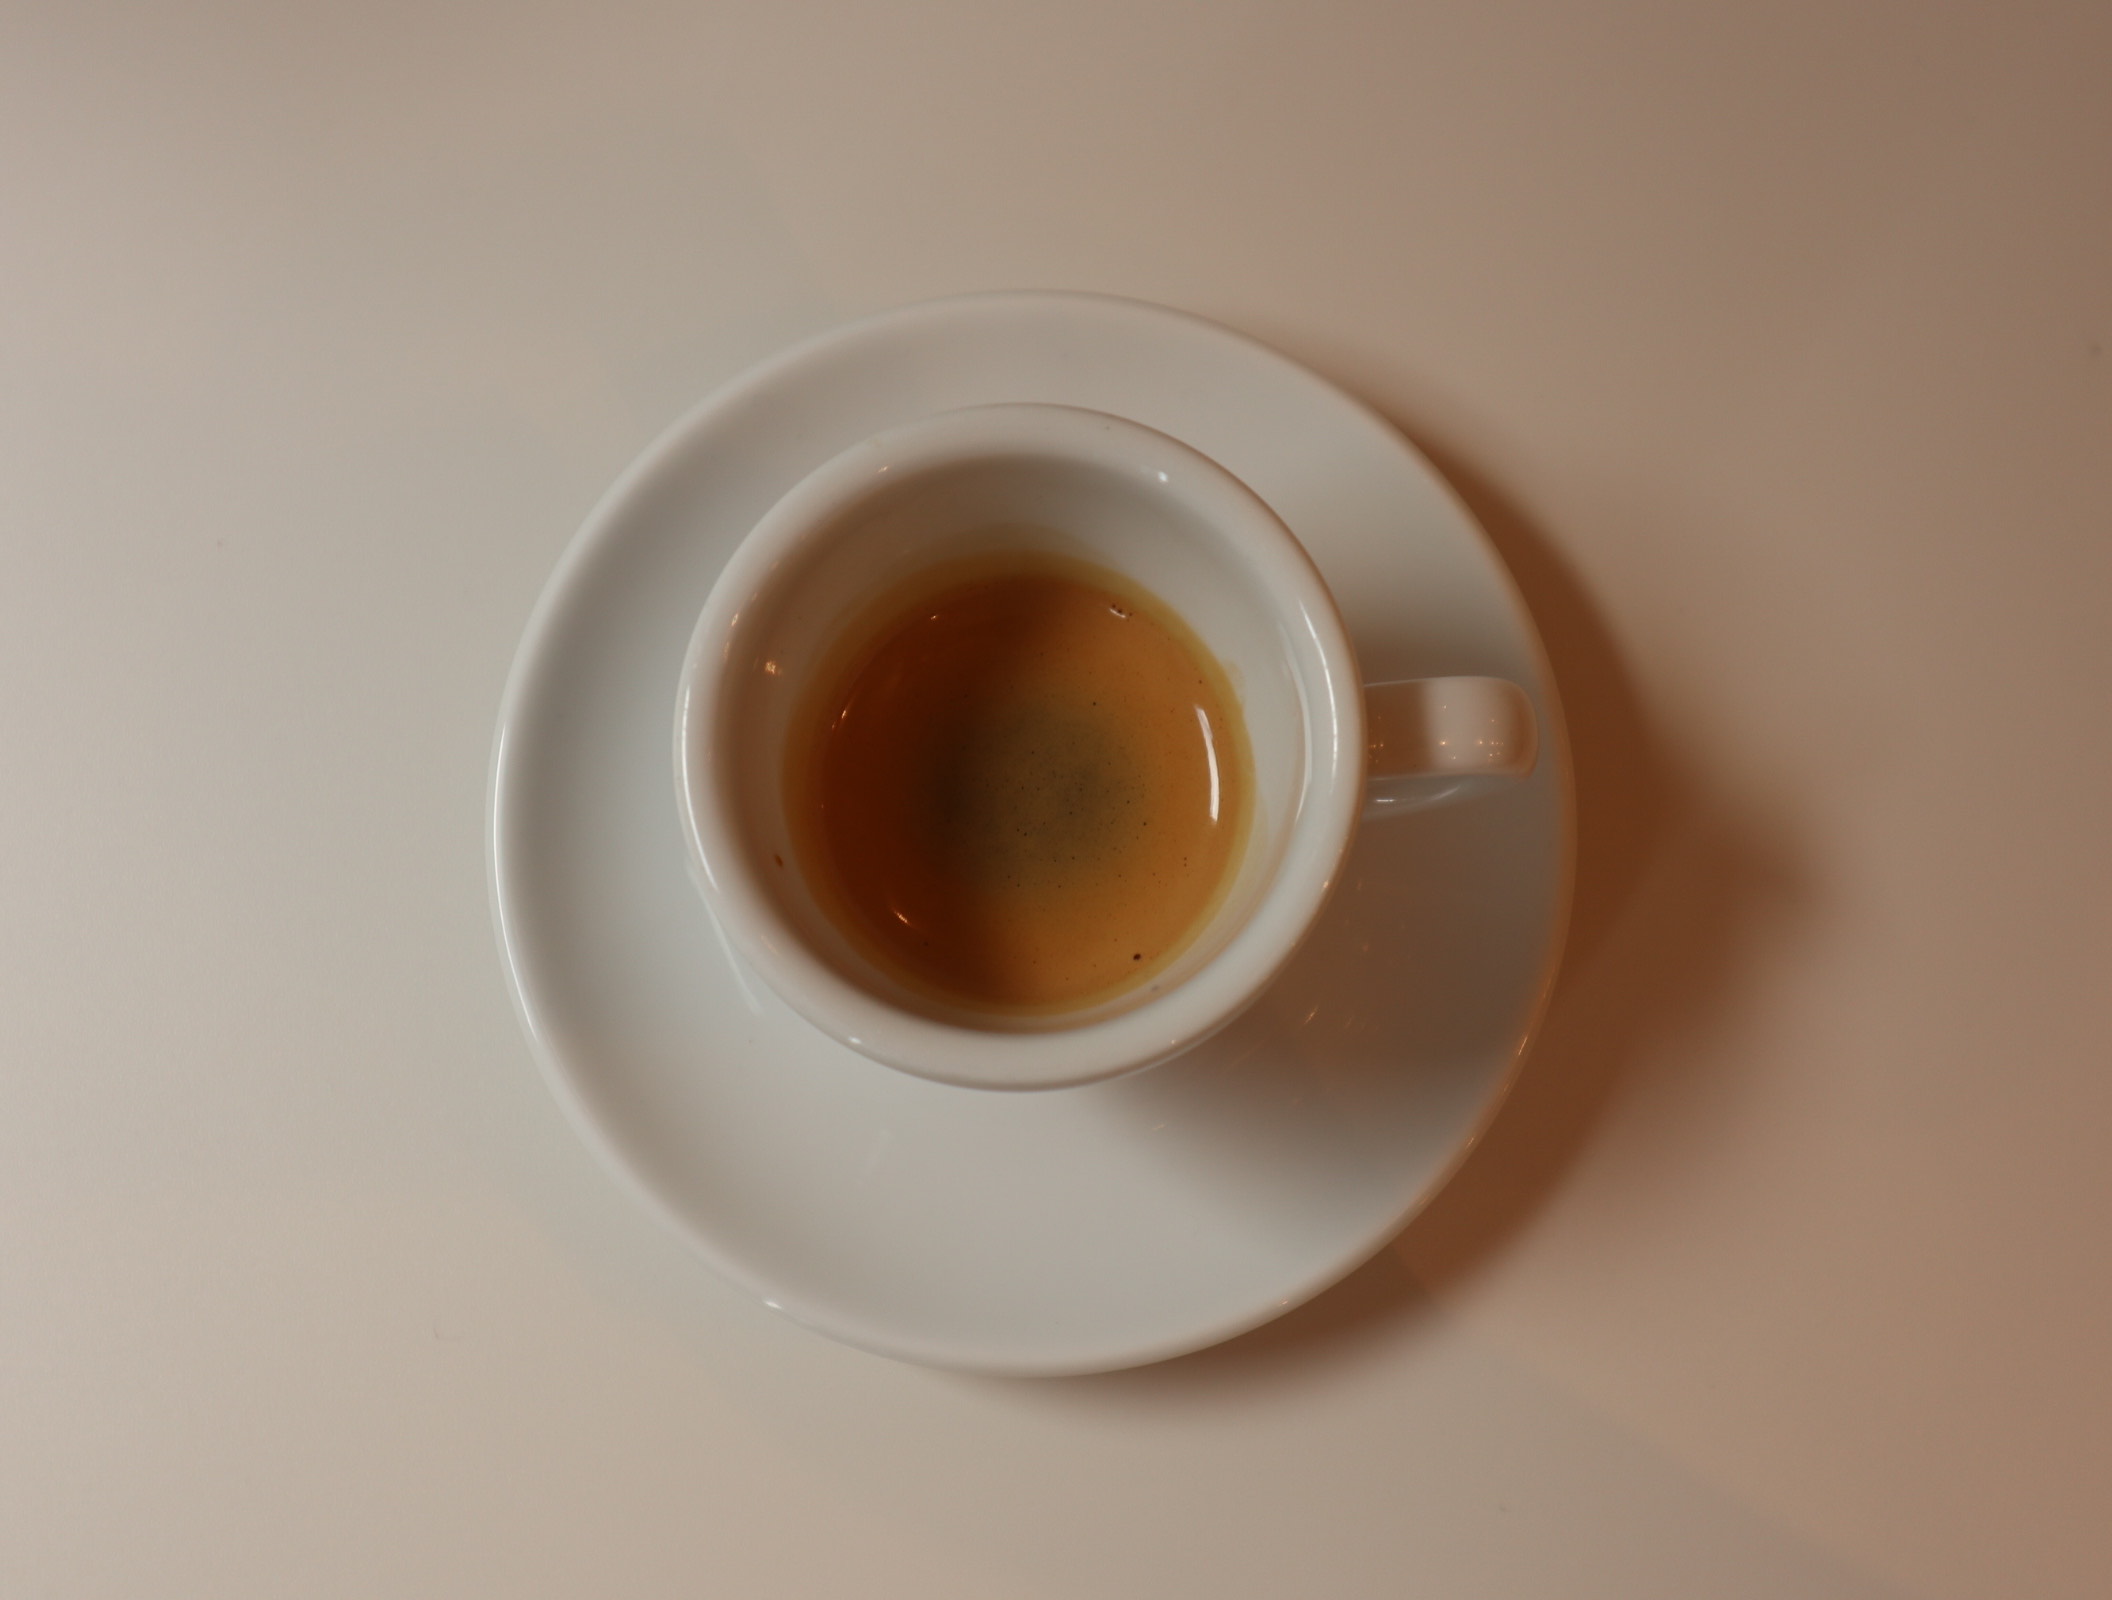 凝縮されし魅惑の液体「Espresso」